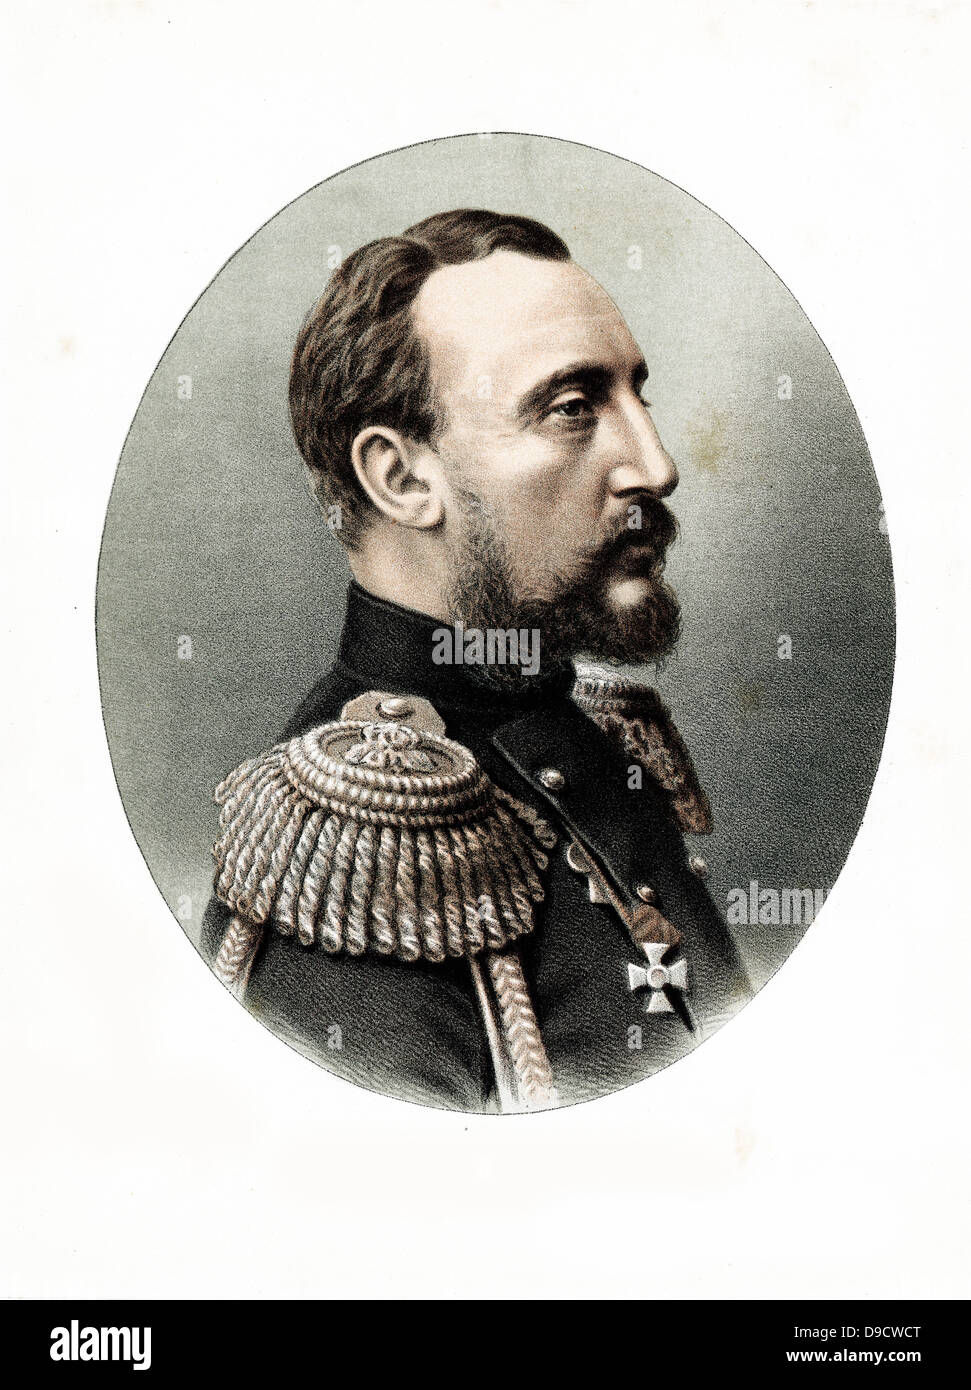 Großartiger Herzog Nicholas Nikolaevich Russlands (1831-1891), russischer General, Bruder des Zaren Alexander II.  Getönte Lithographie c1880. Stockfoto